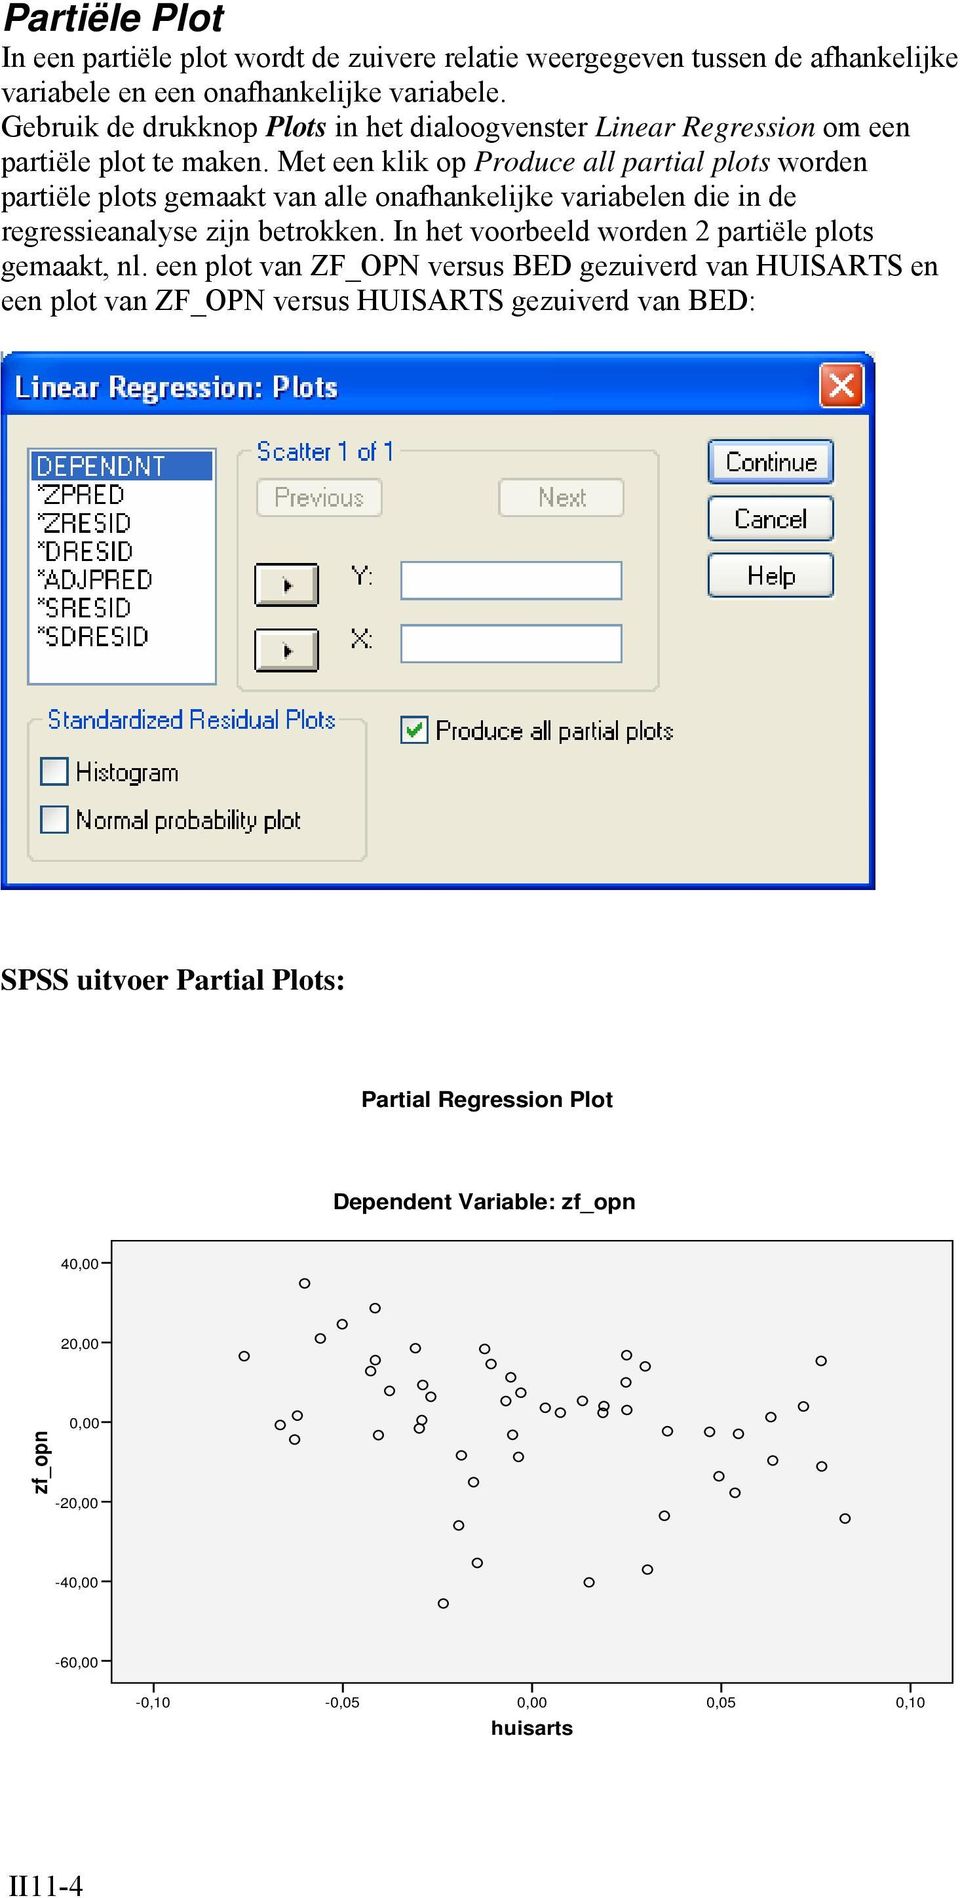 Met een klik op Produce all partial plots worden partiële plots gemaakt van alle onafhankelijke variabelen die in de regressieanalyse zijn betrokken.